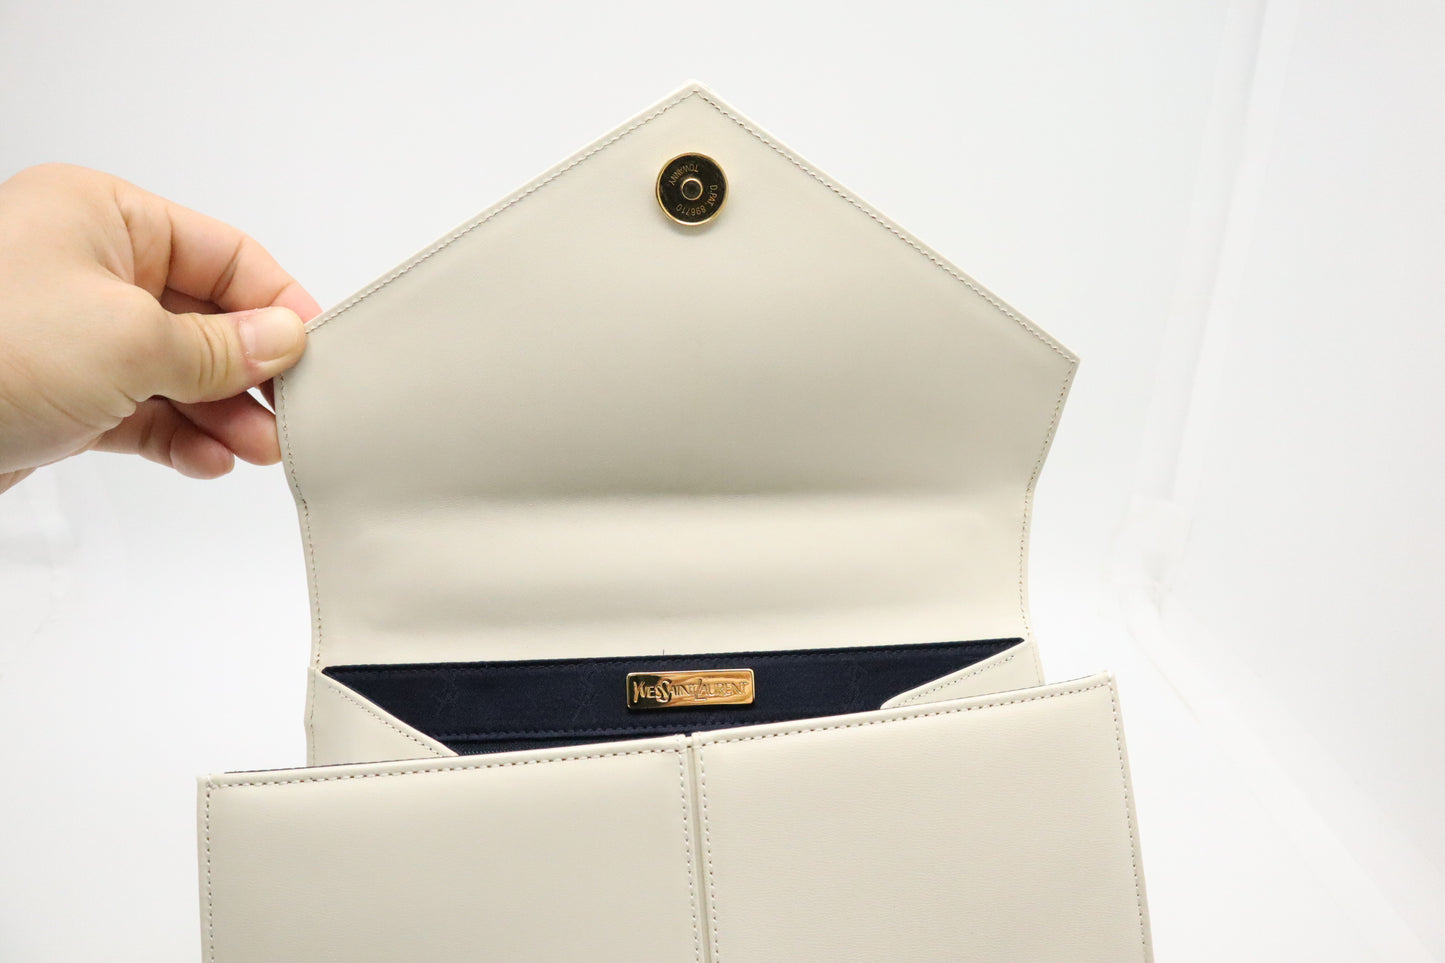 YSL Saint Laurent Handbag in White Leather